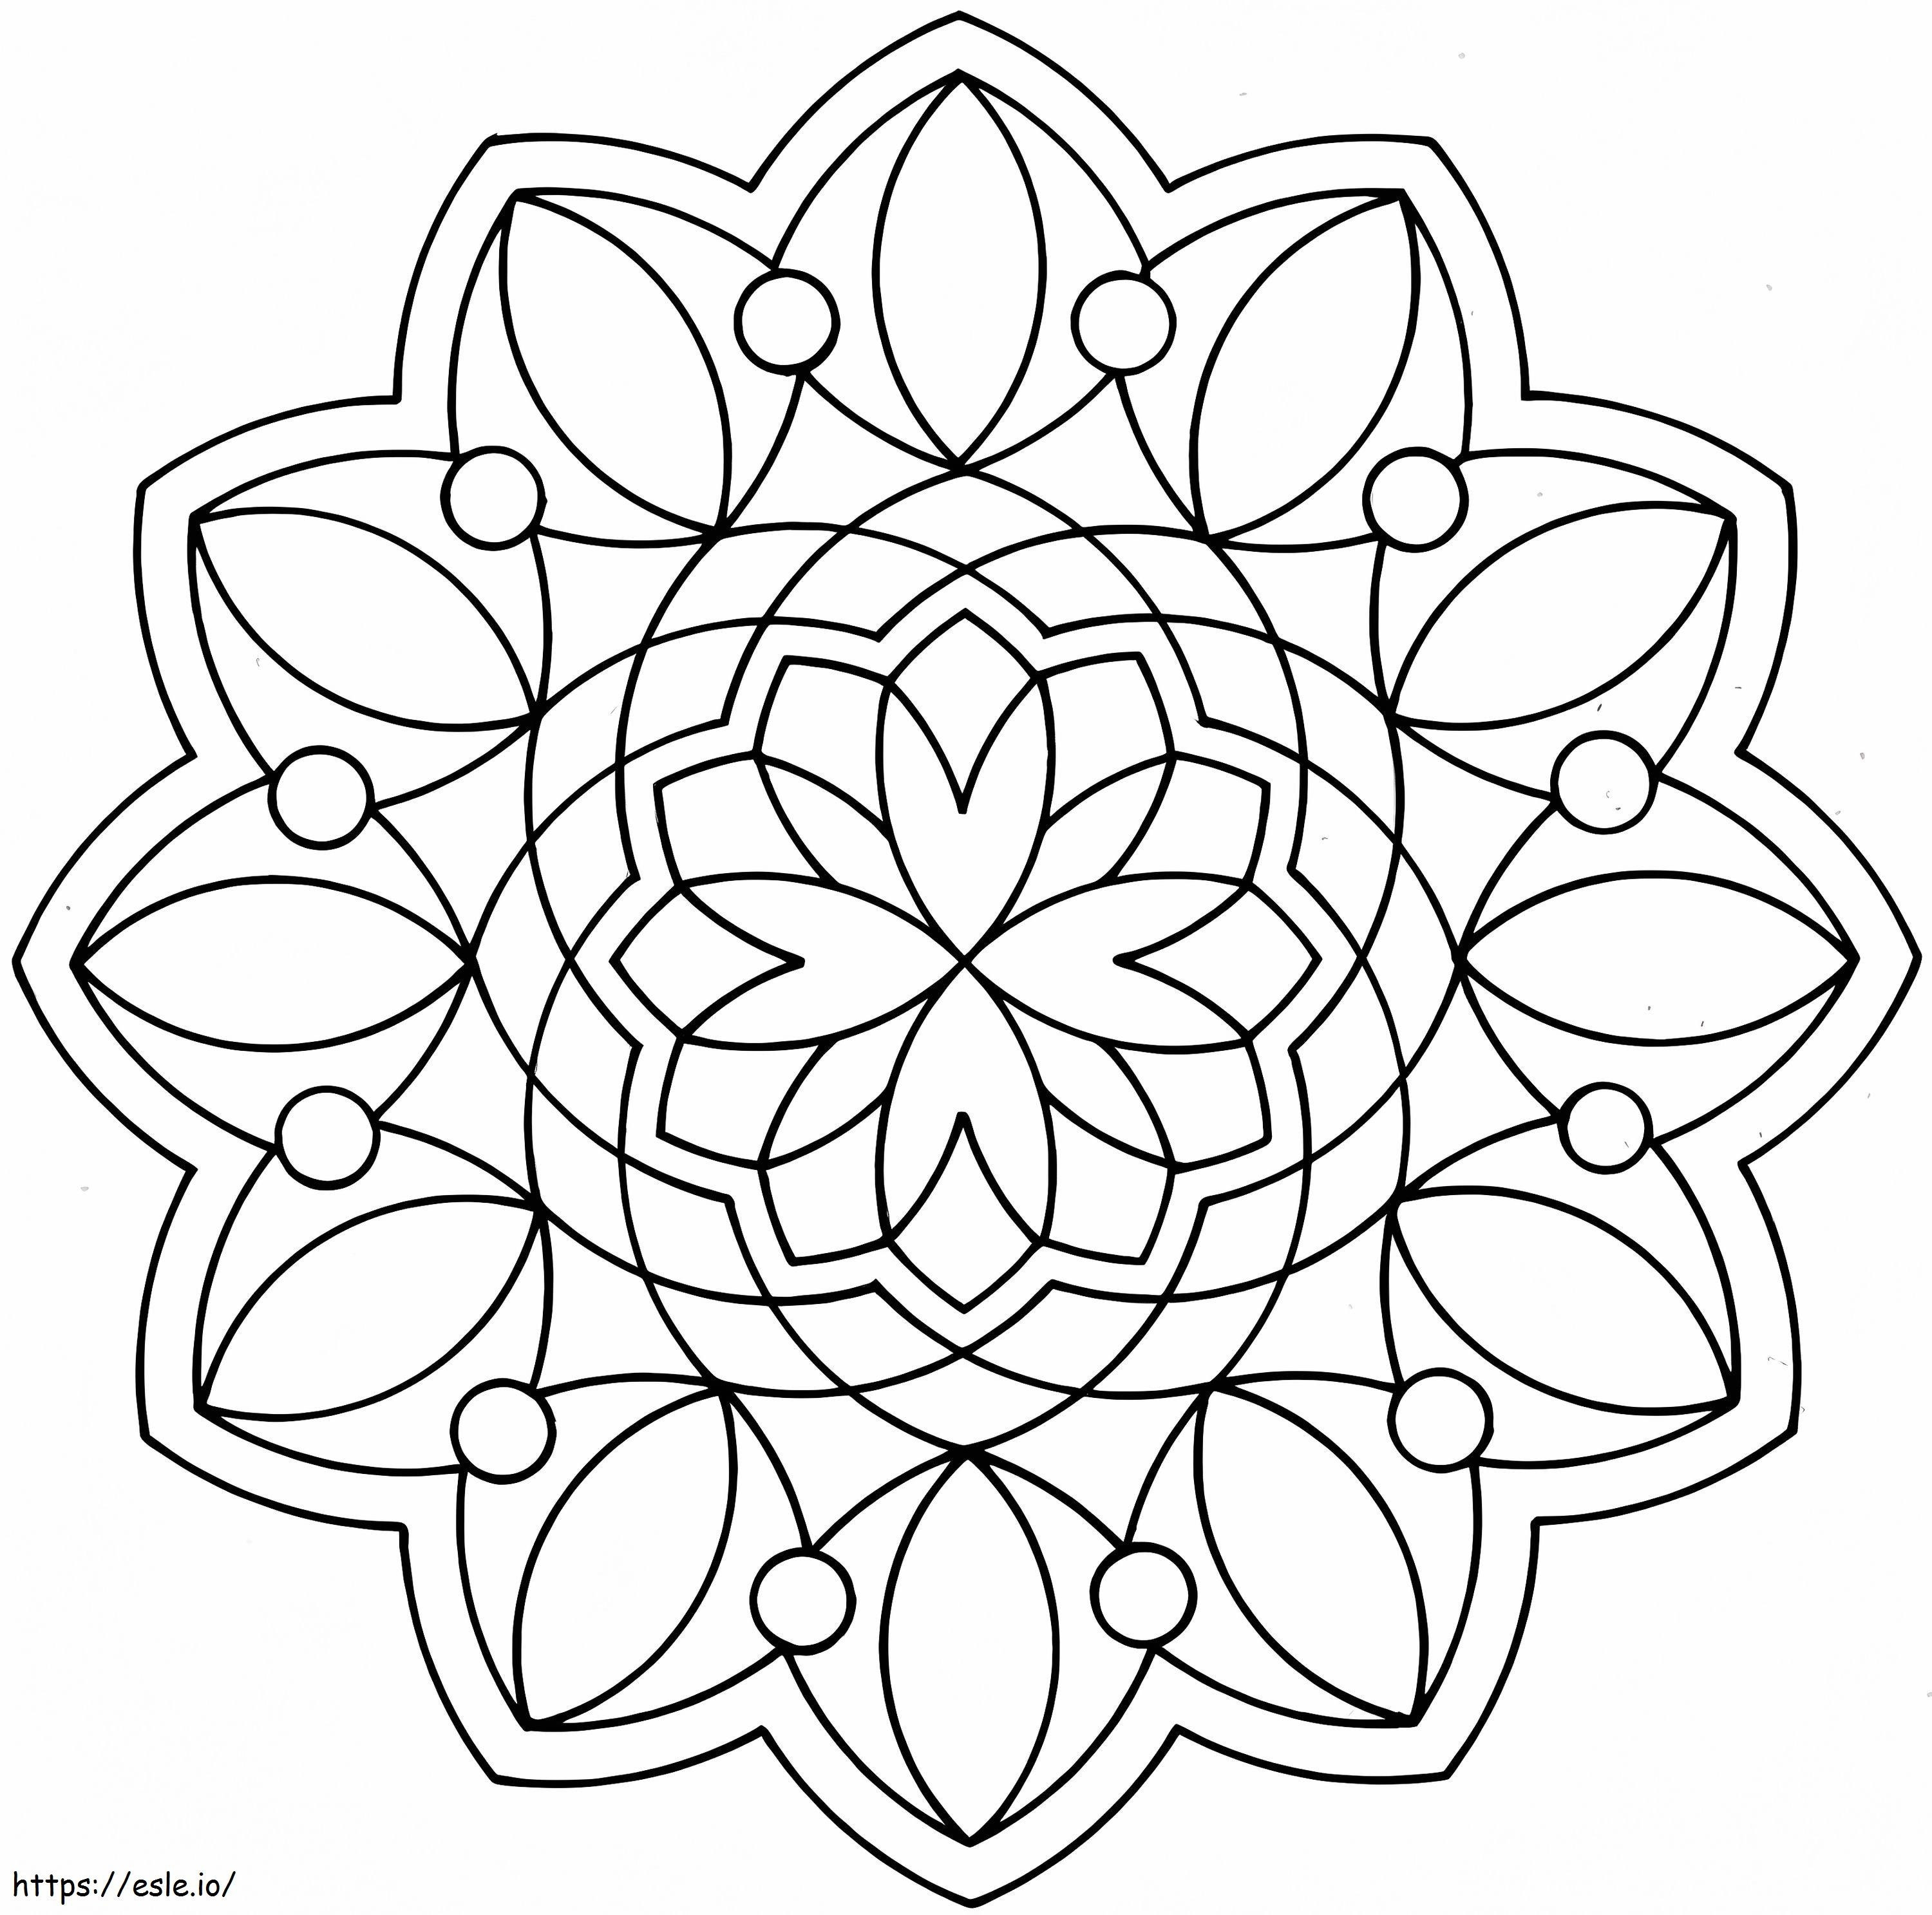 Mandala de flori pentru a colora de colorat